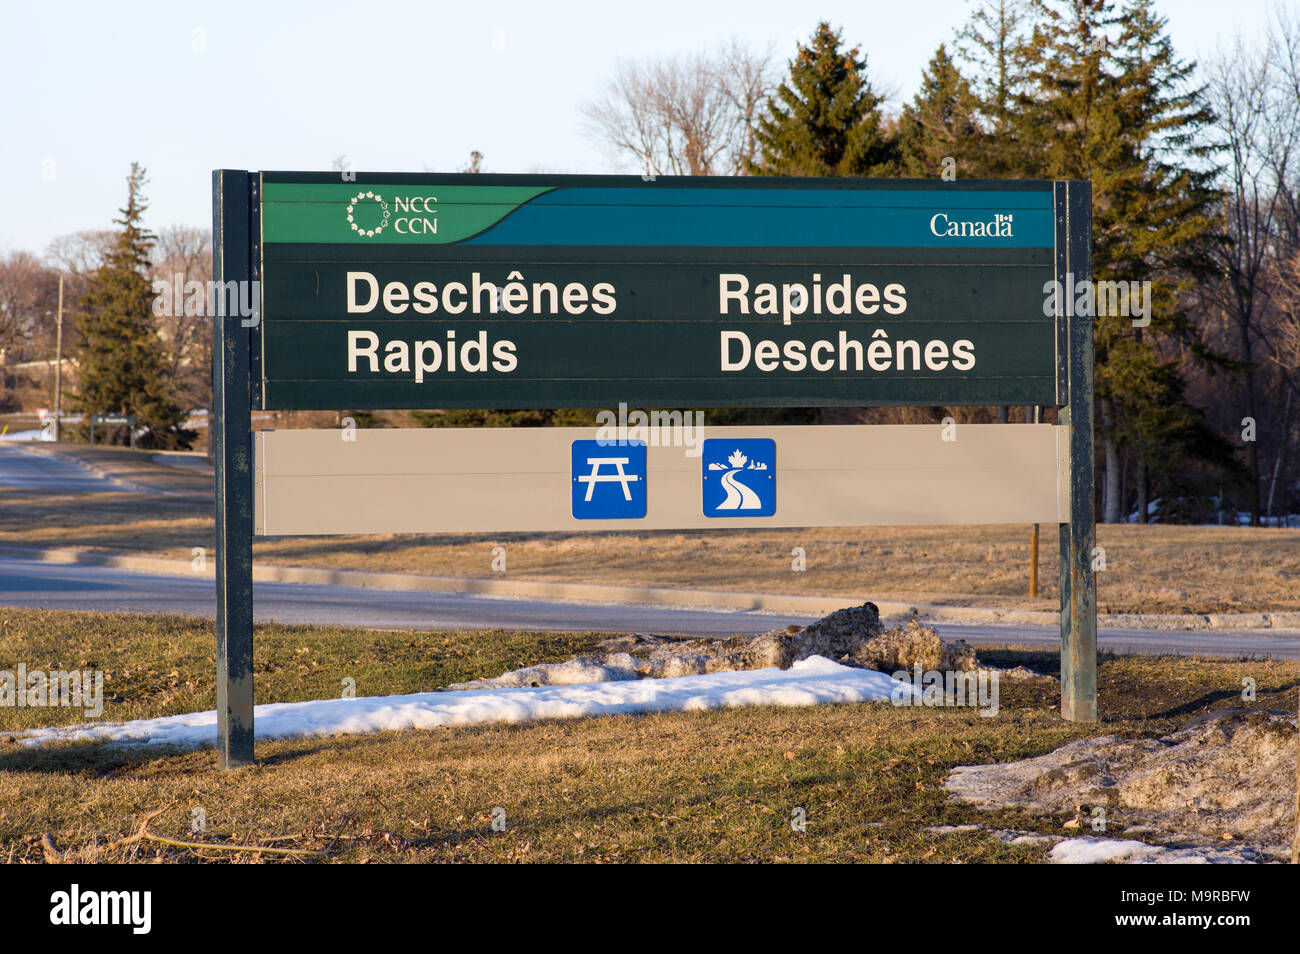 bilingual sign for deschenes rapids, Ottawa, Canada Stock Photo